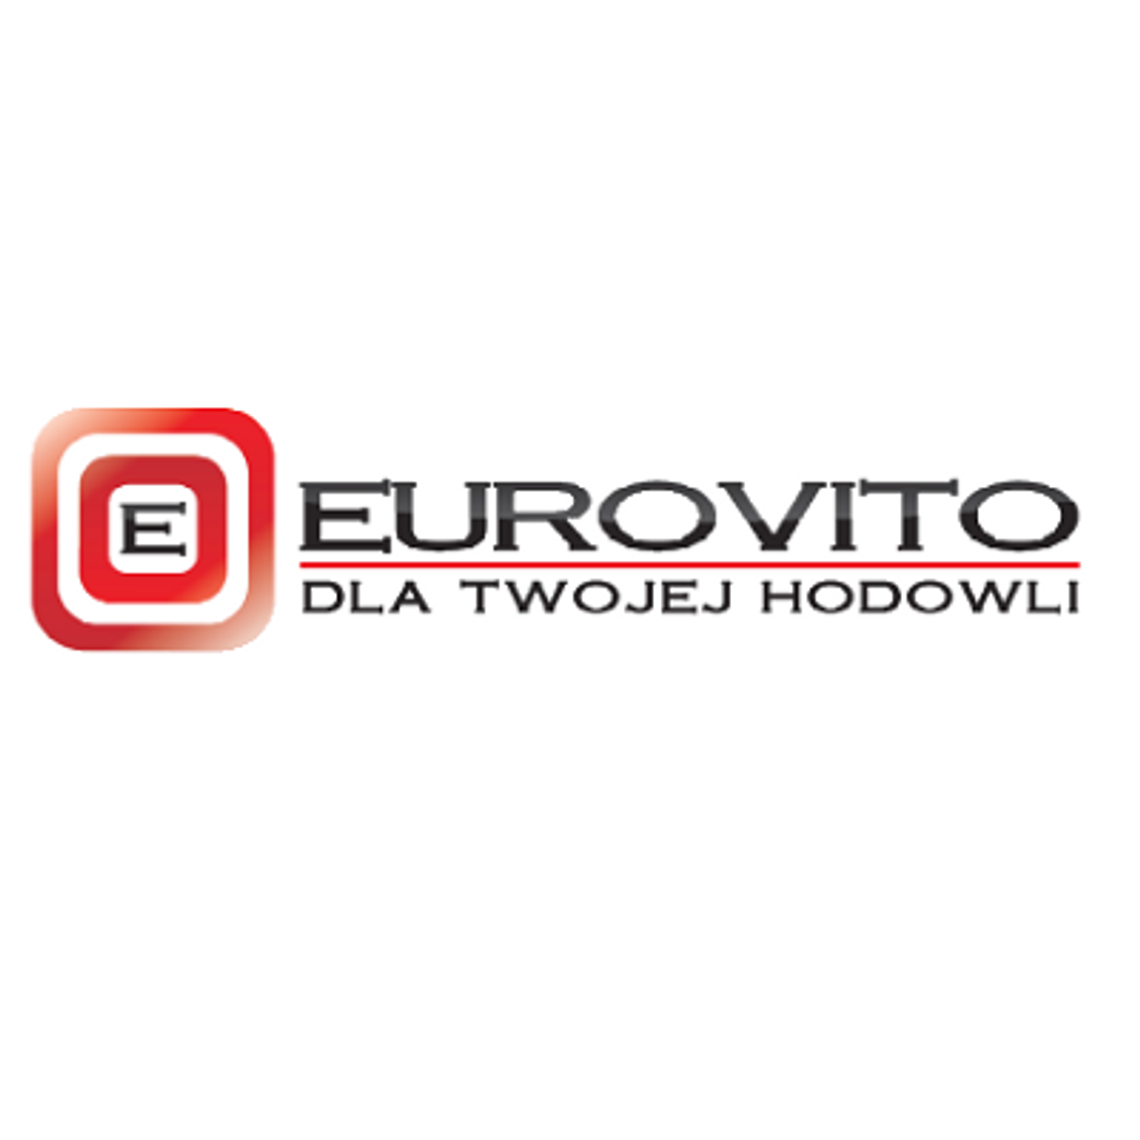 EUROVITO - oferta idealna dla hodowcy